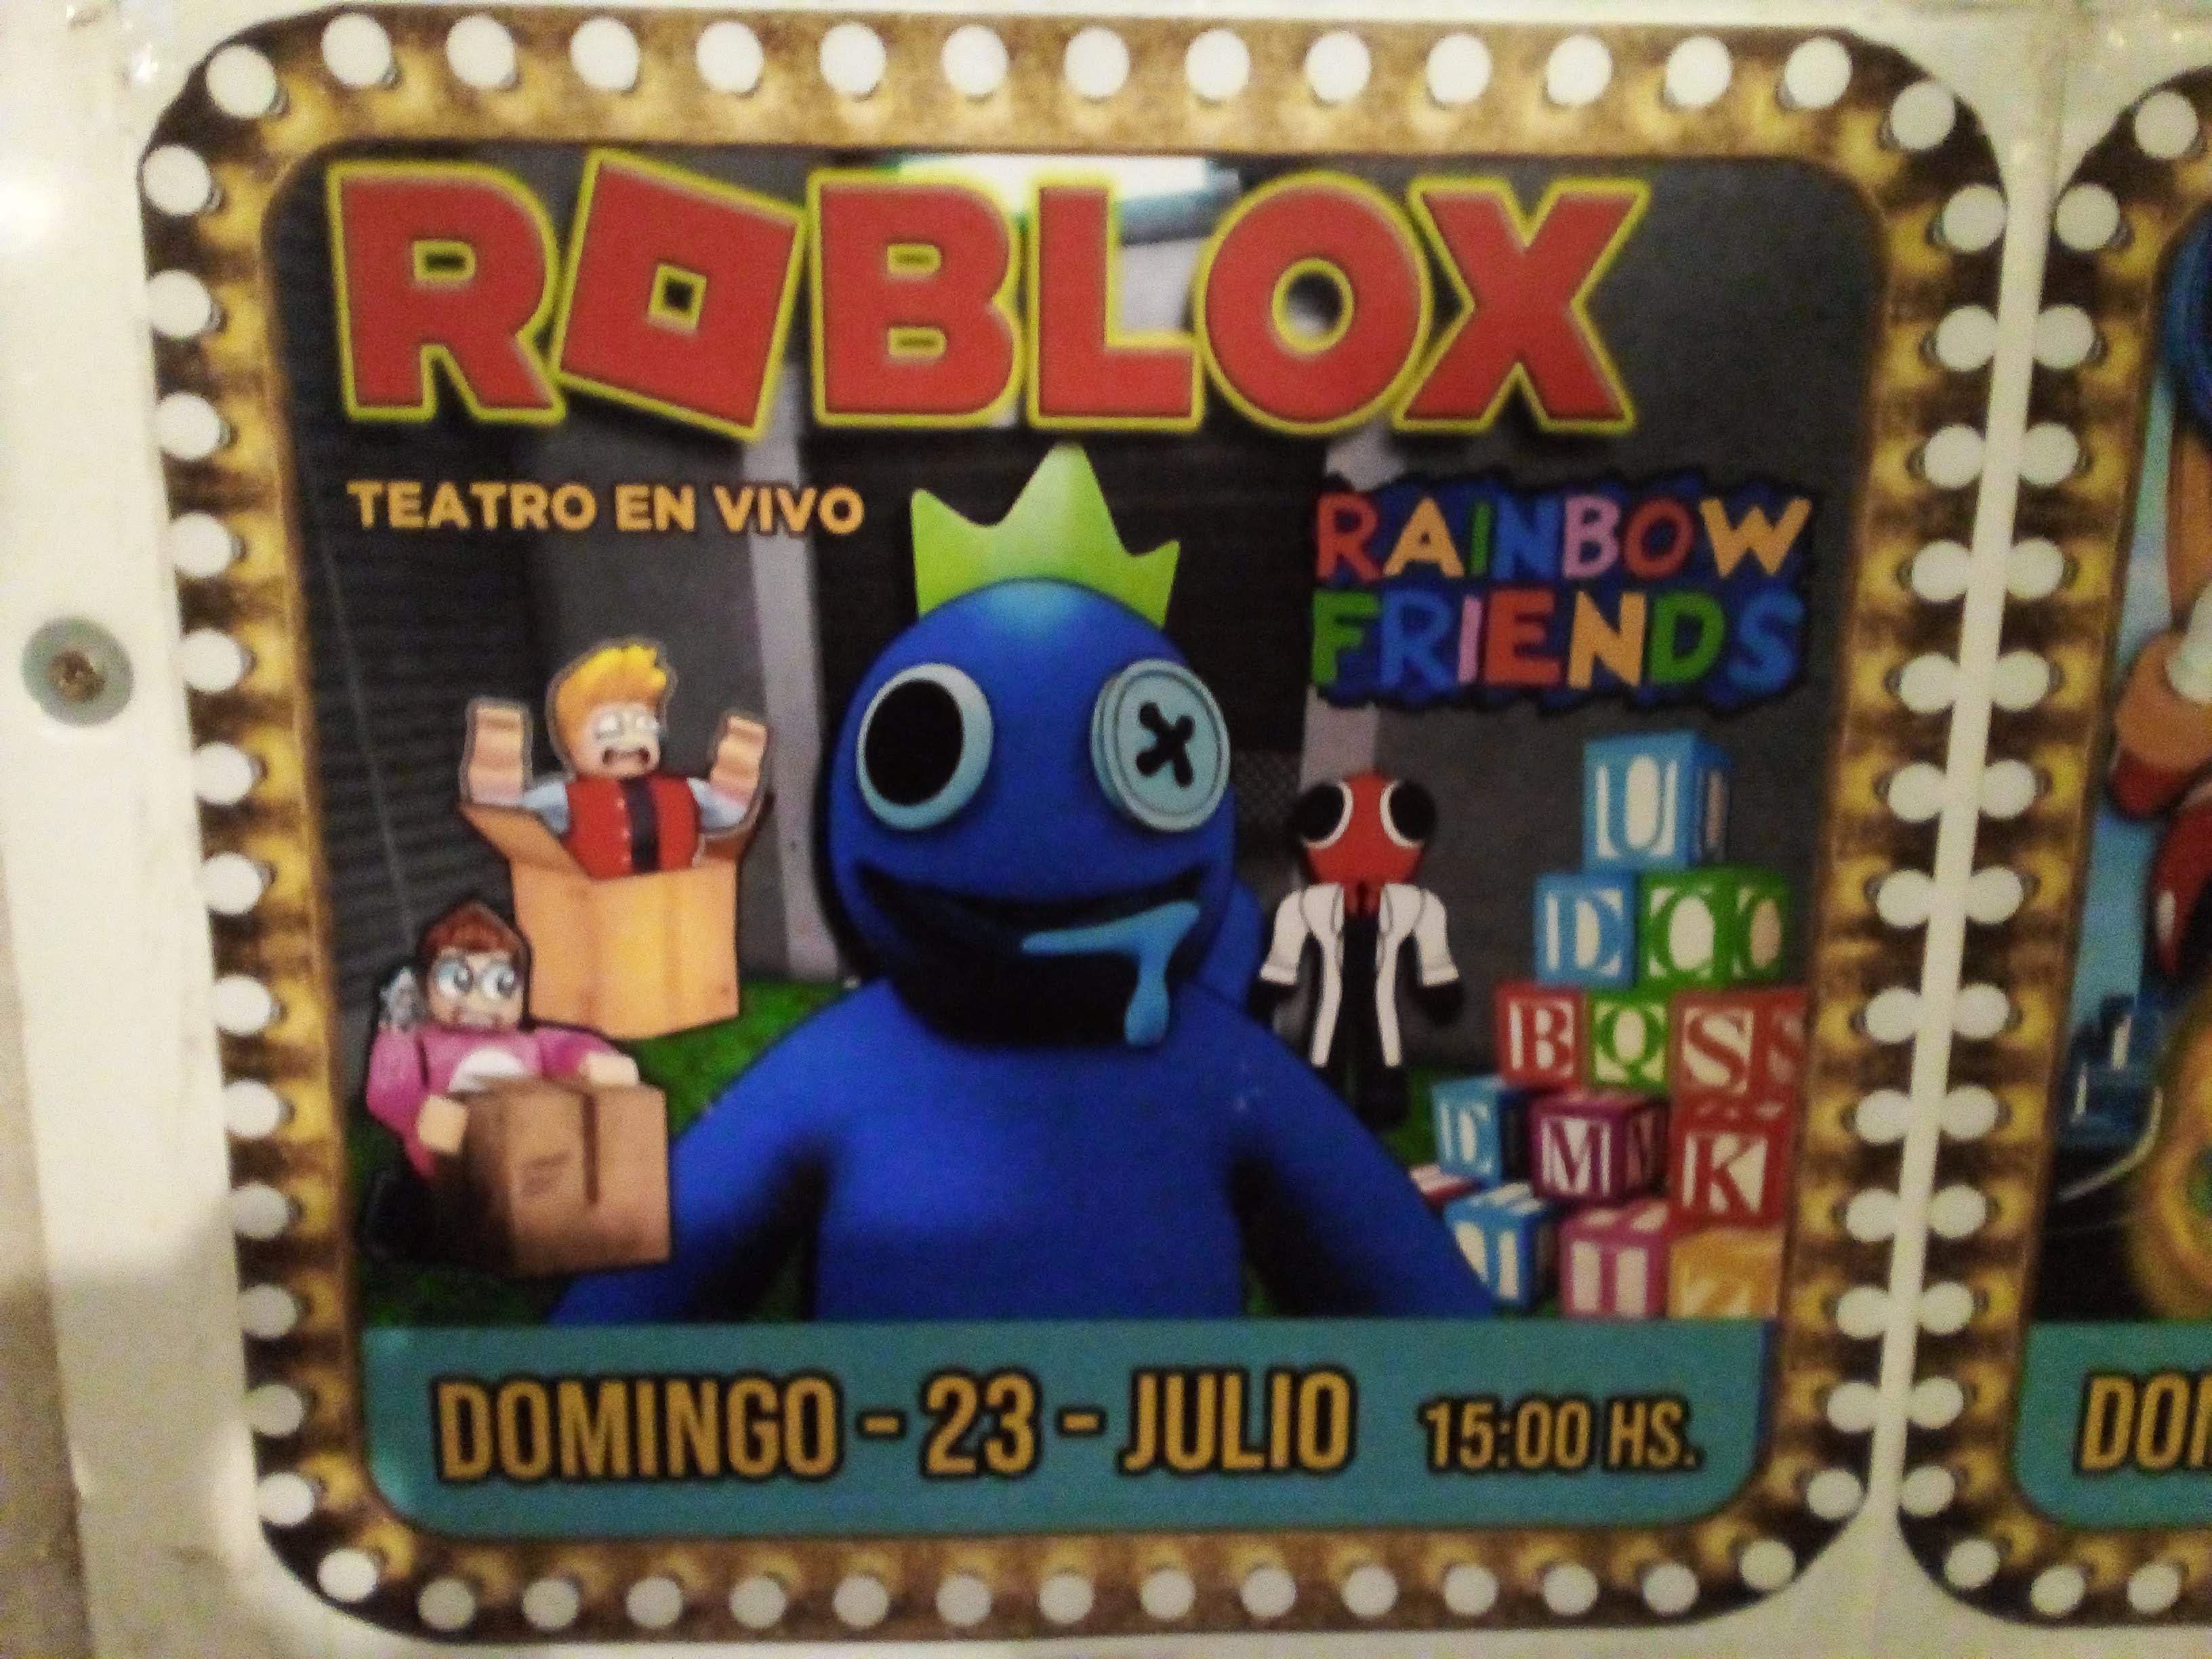 Roblox Rainbow Friend no Teatro Santa Cruz - Ingressos Kids